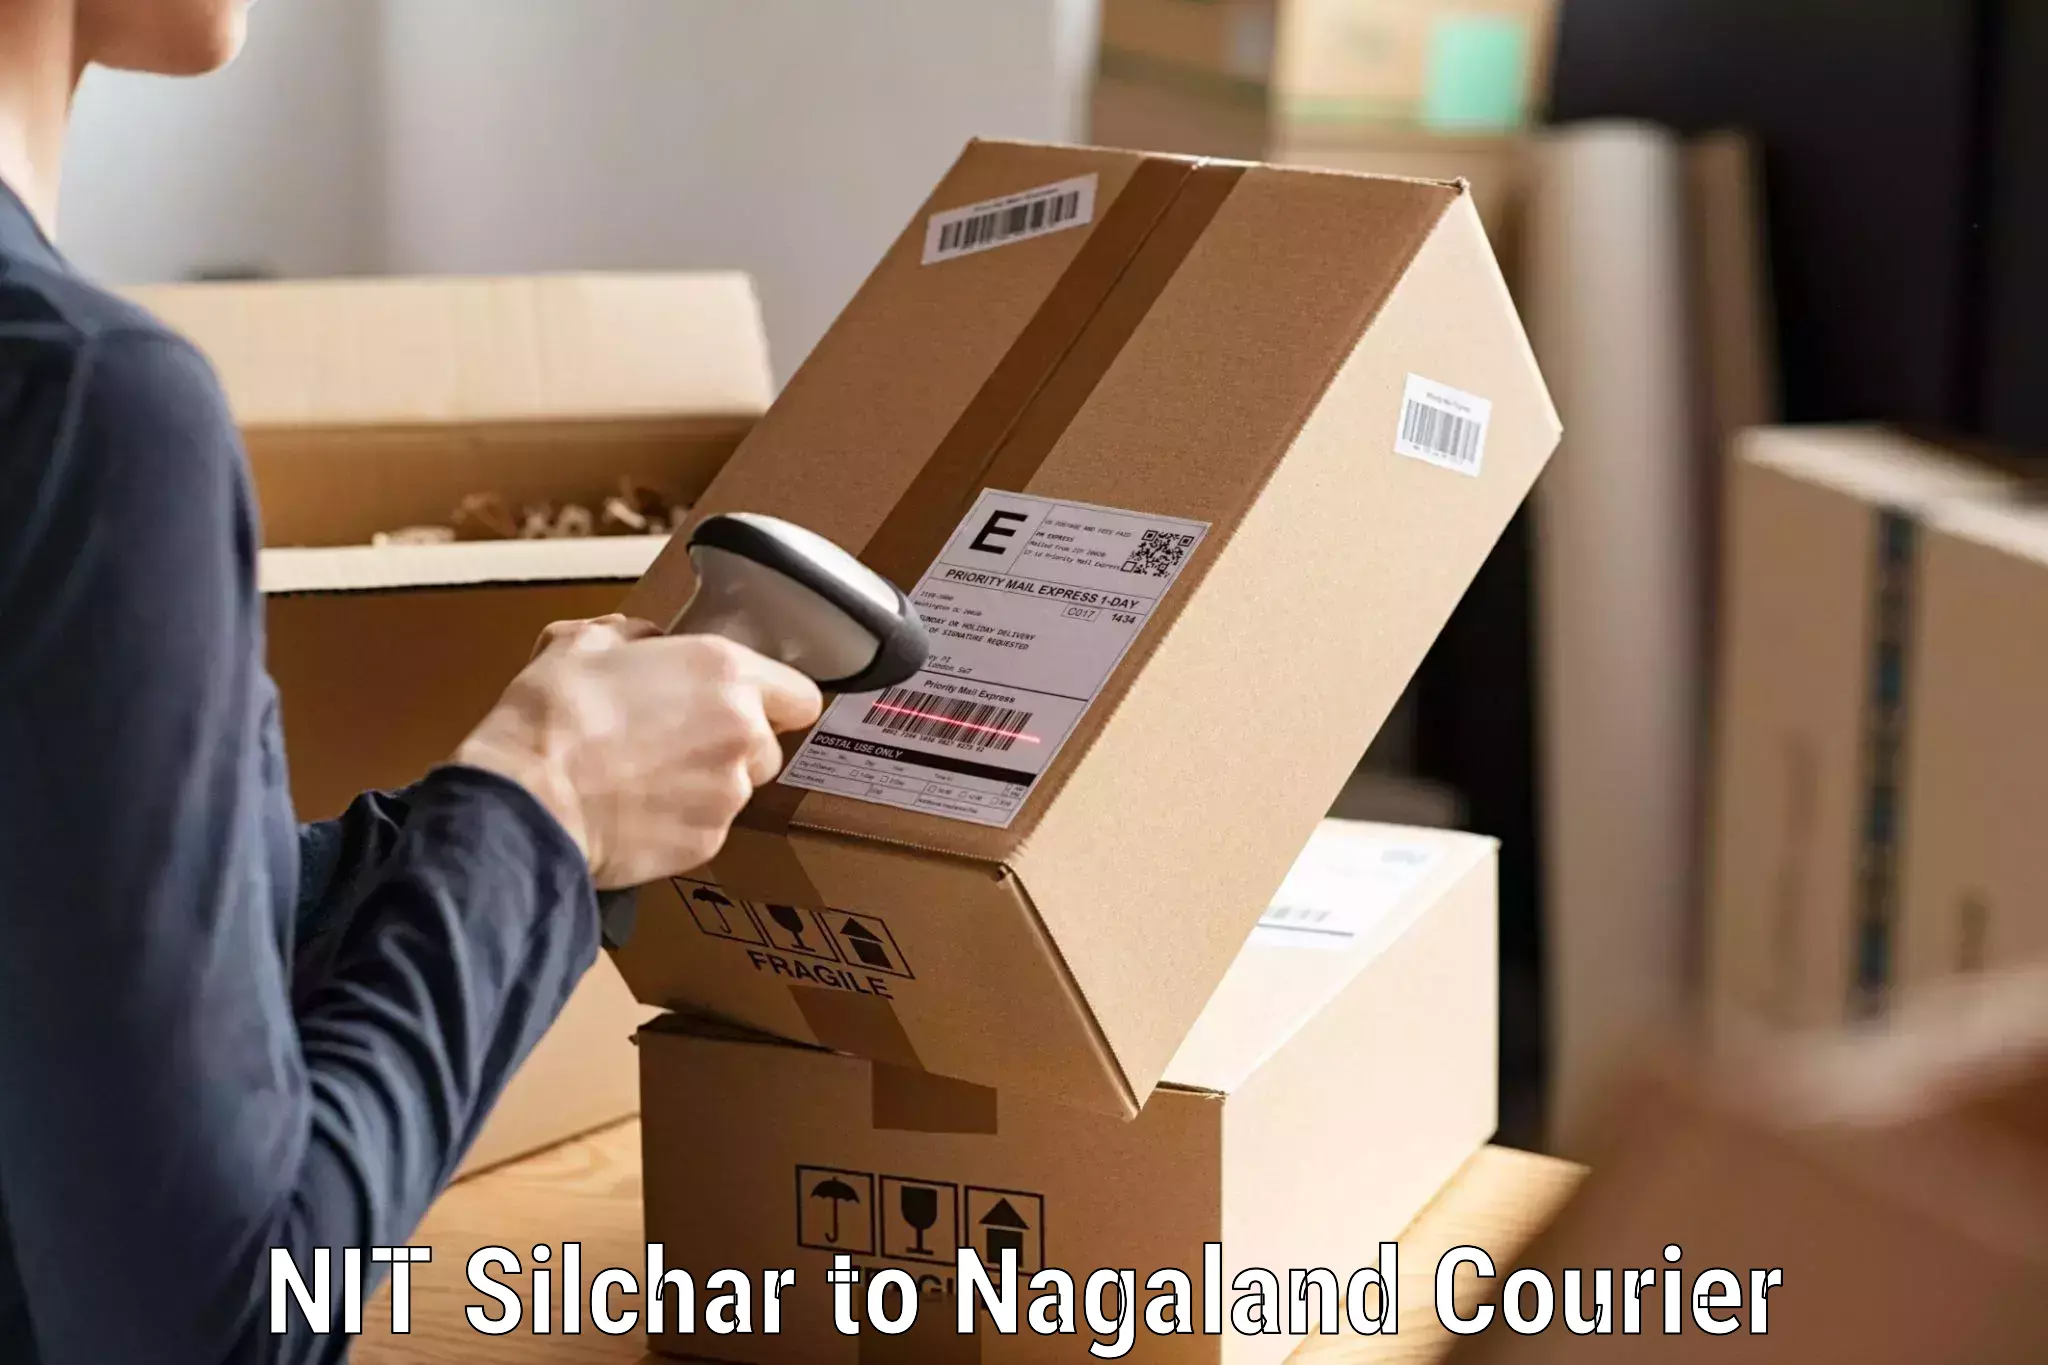 Premium courier services NIT Silchar to Dimapur